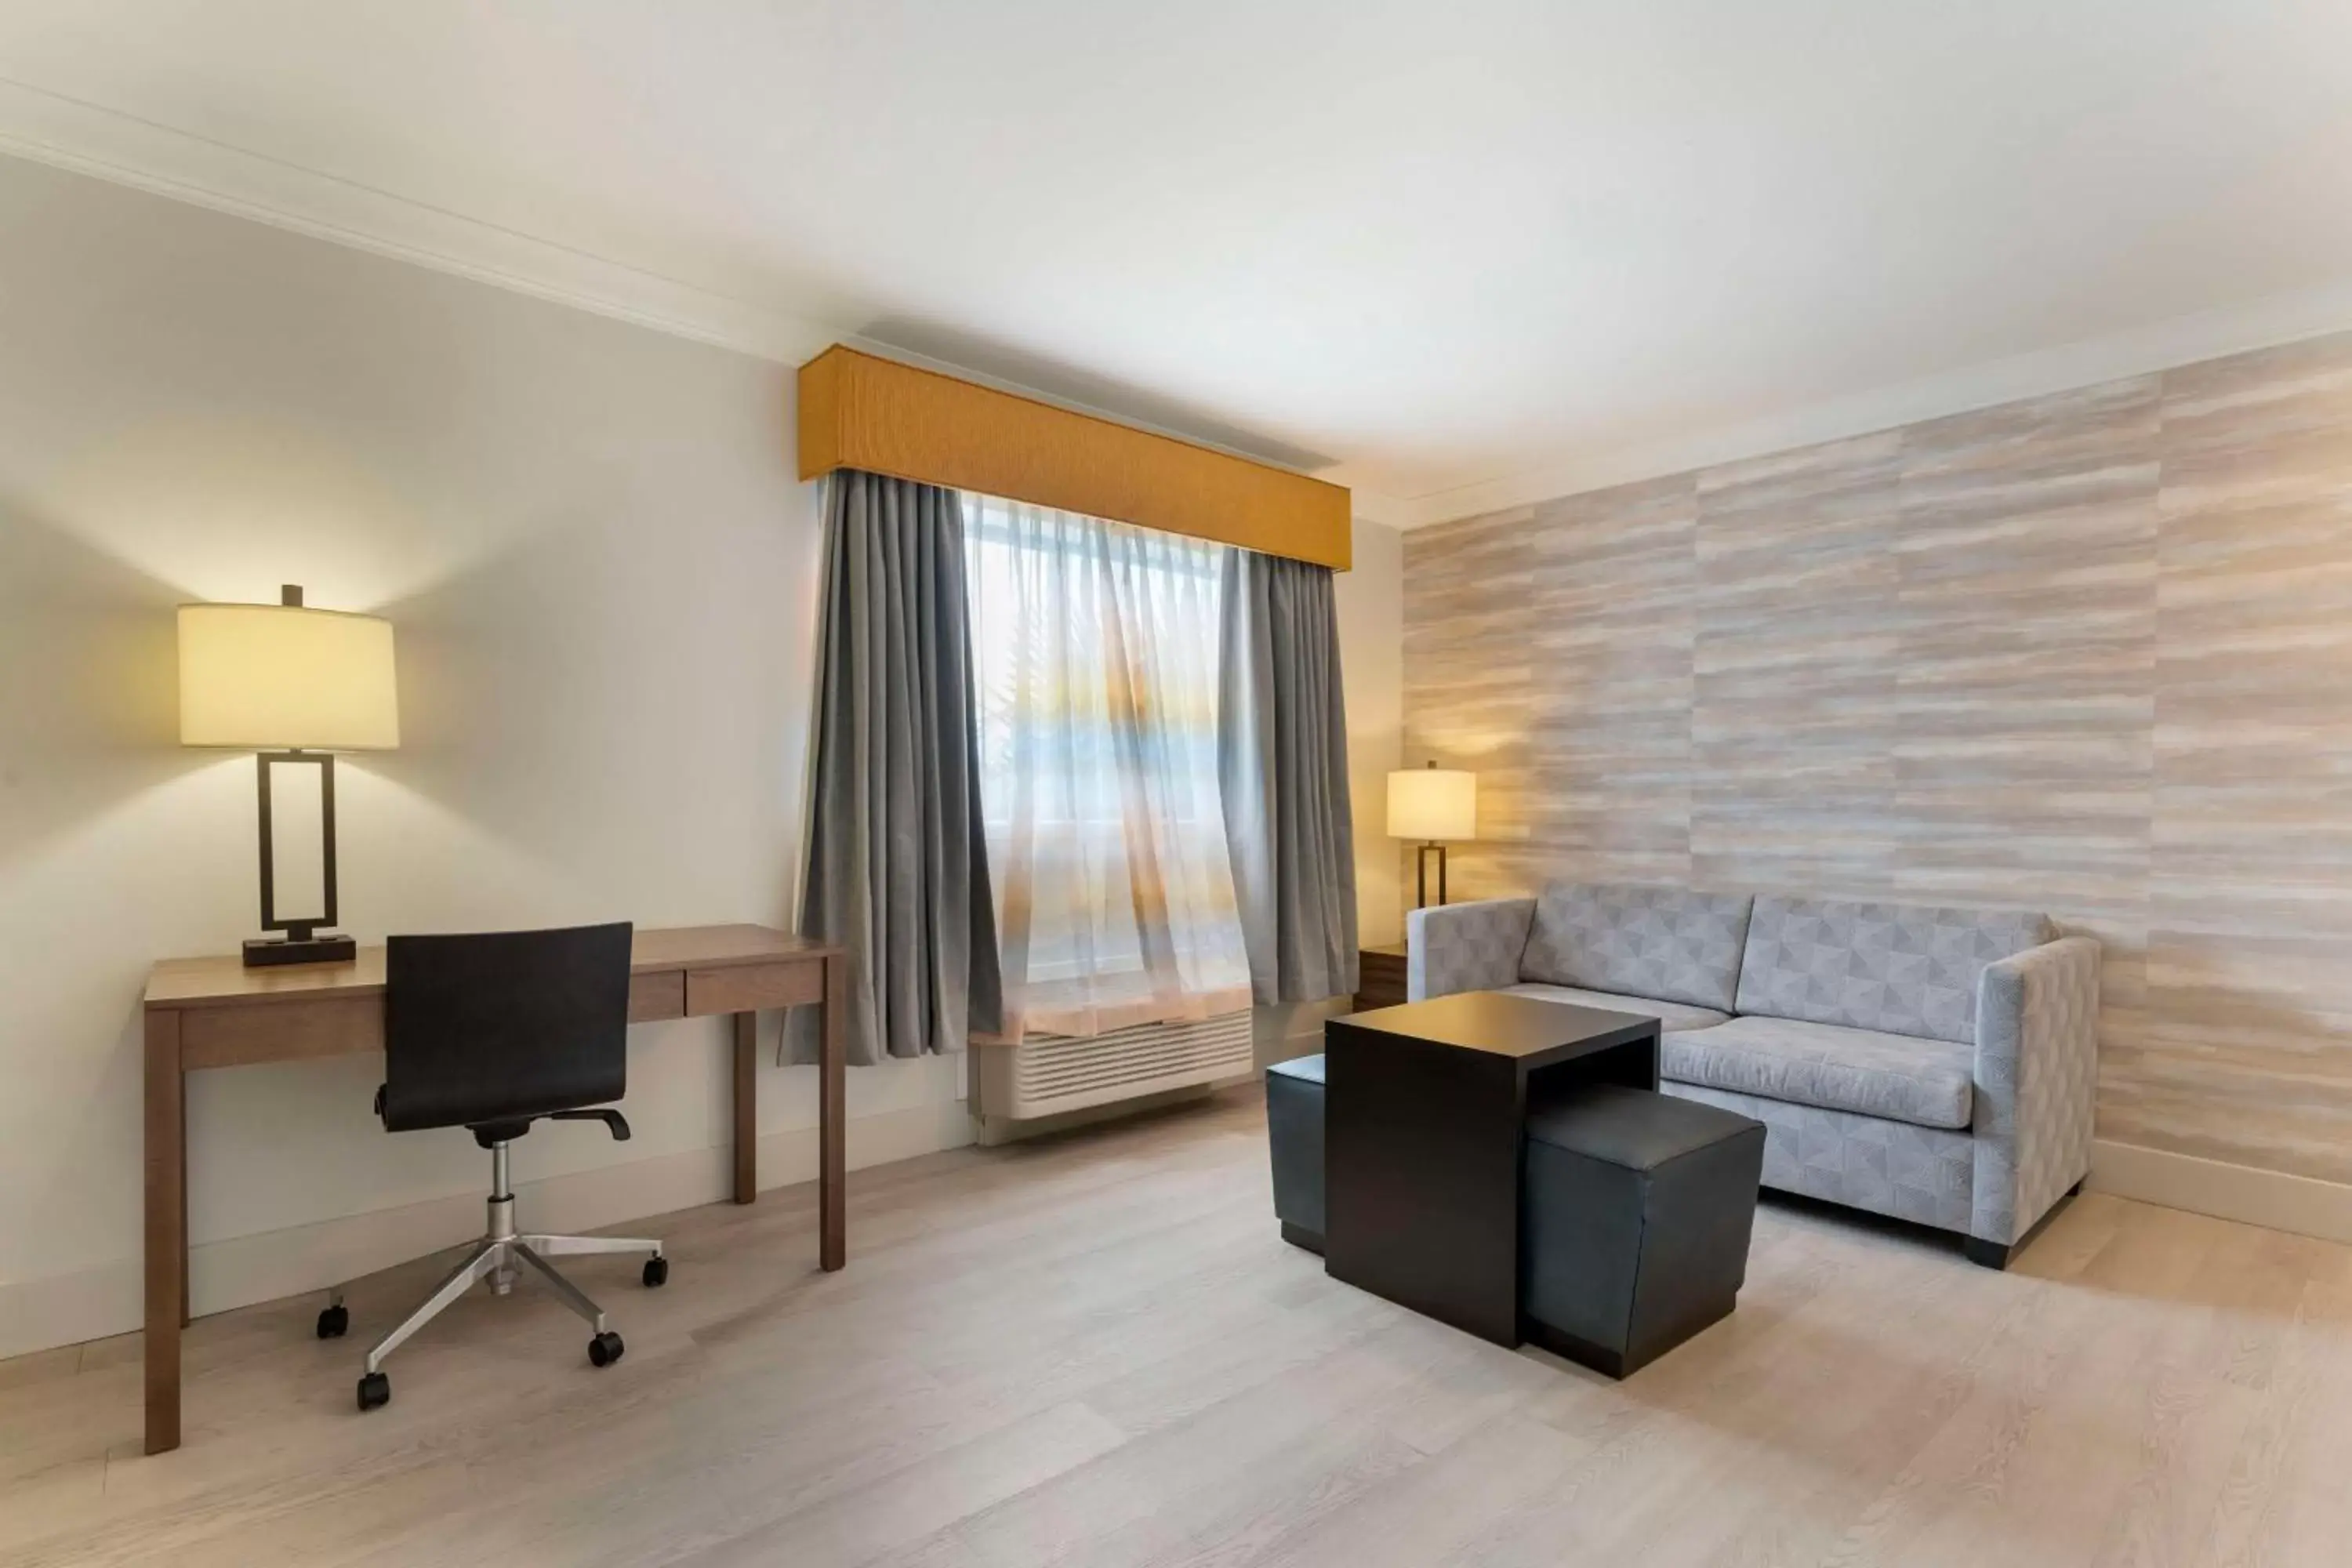 Bedroom, Seating Area in Best Western Plus All Suites Inn